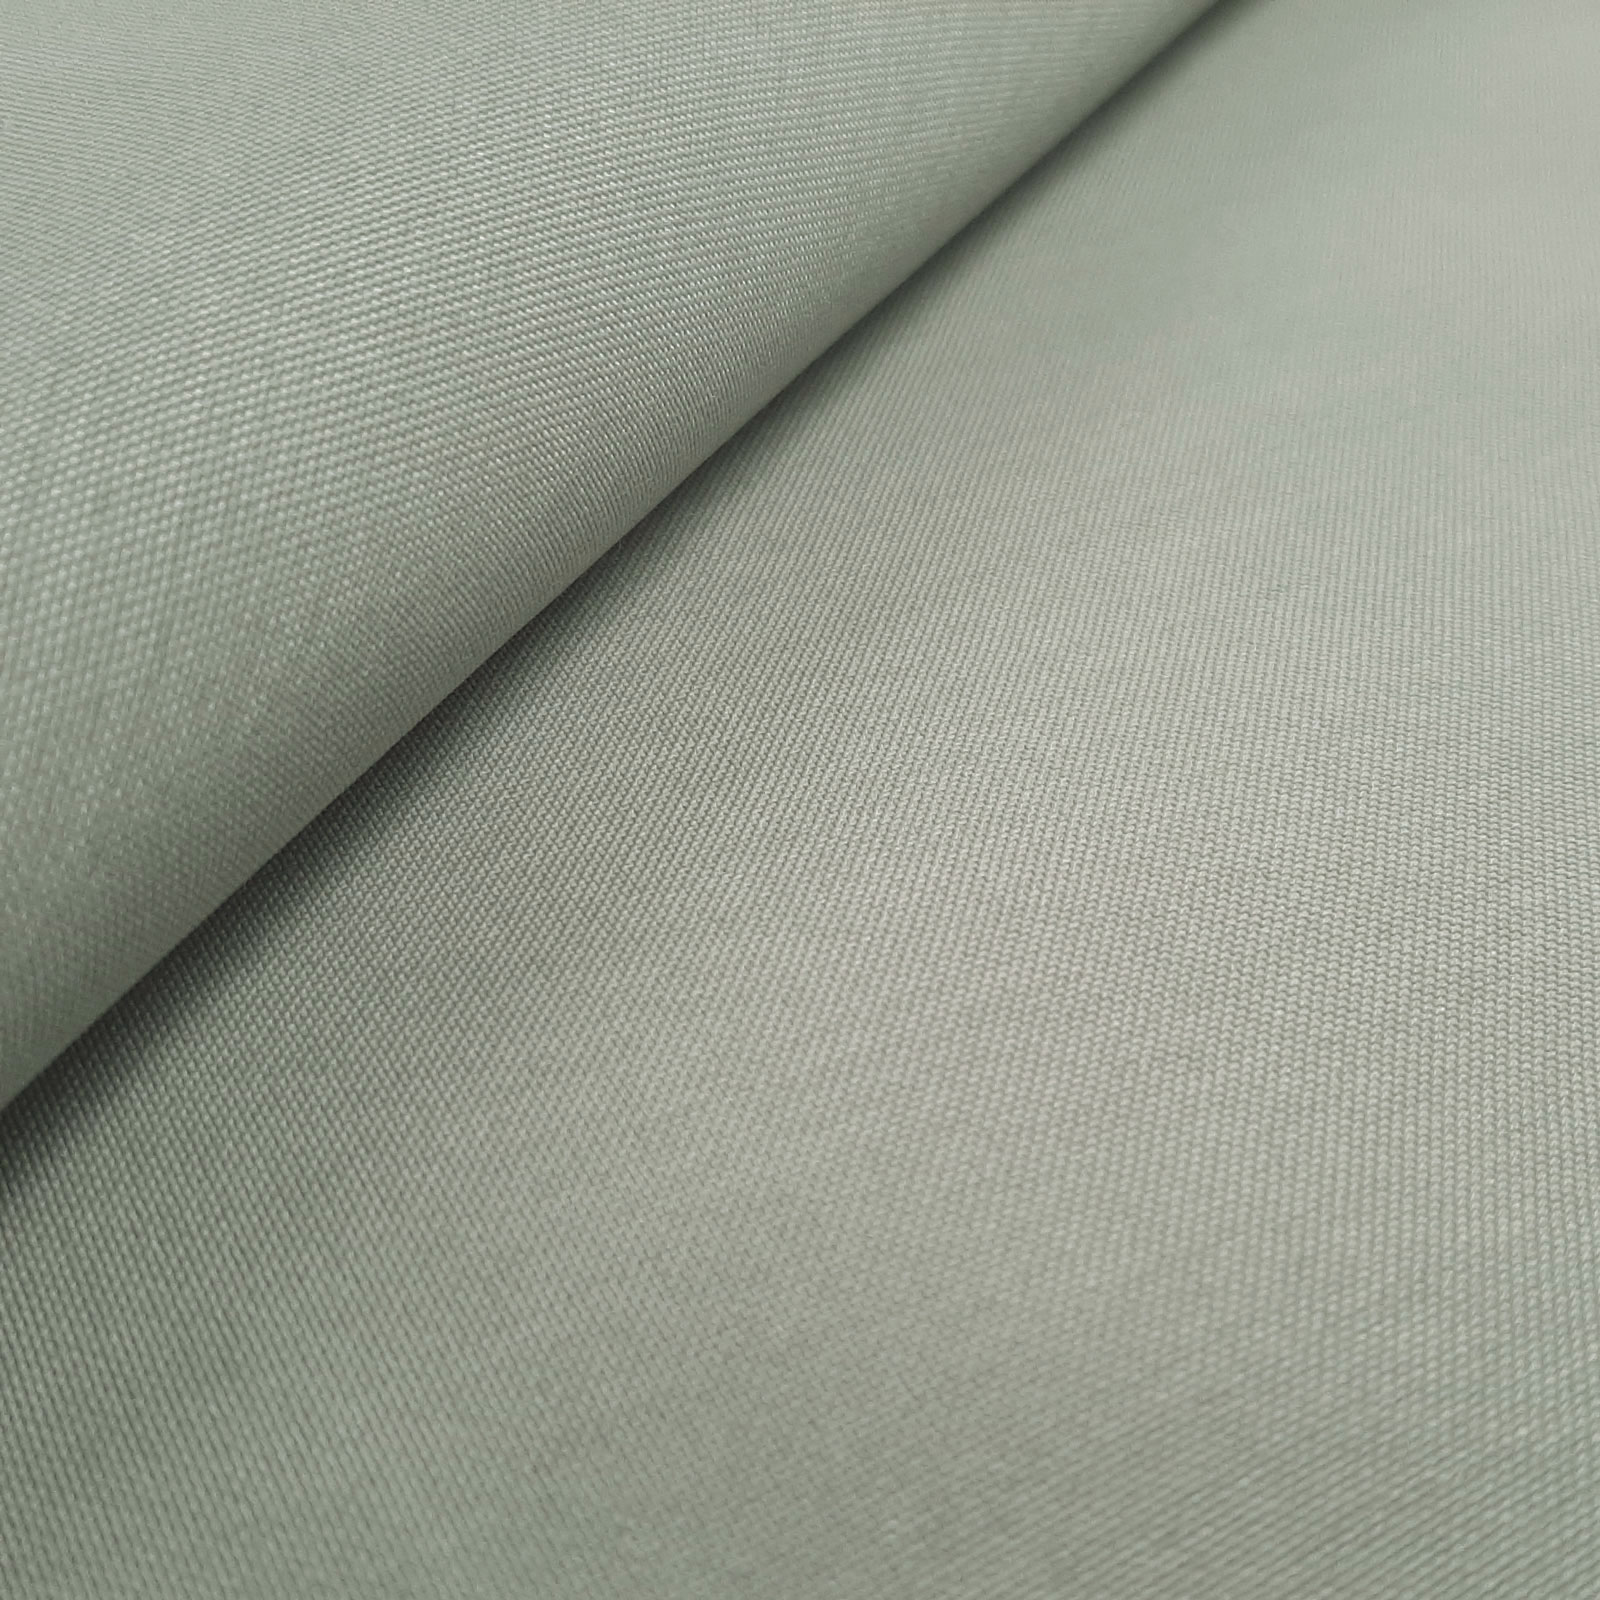 Zinos - robust Cordura® fabric